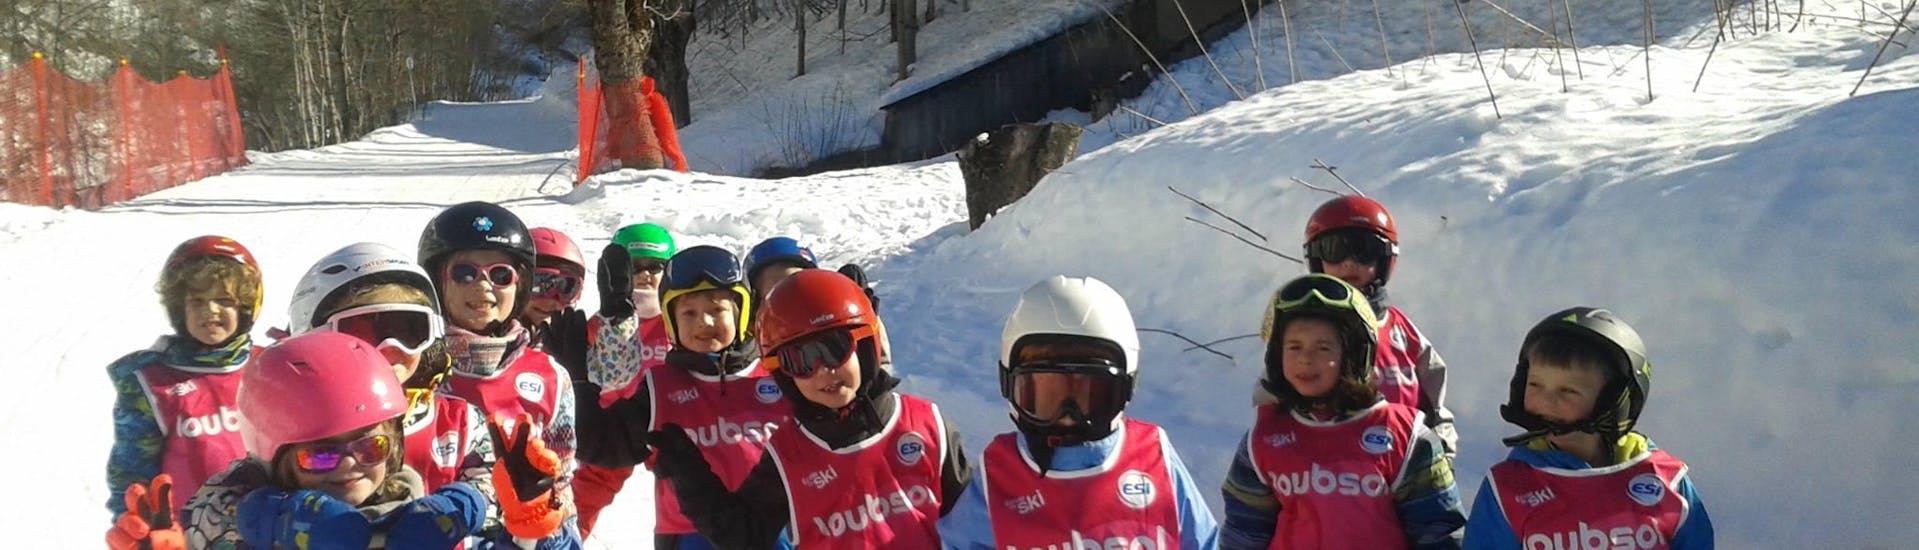 Skilessen voor kinderen vanaf 3 jaar - beginners.